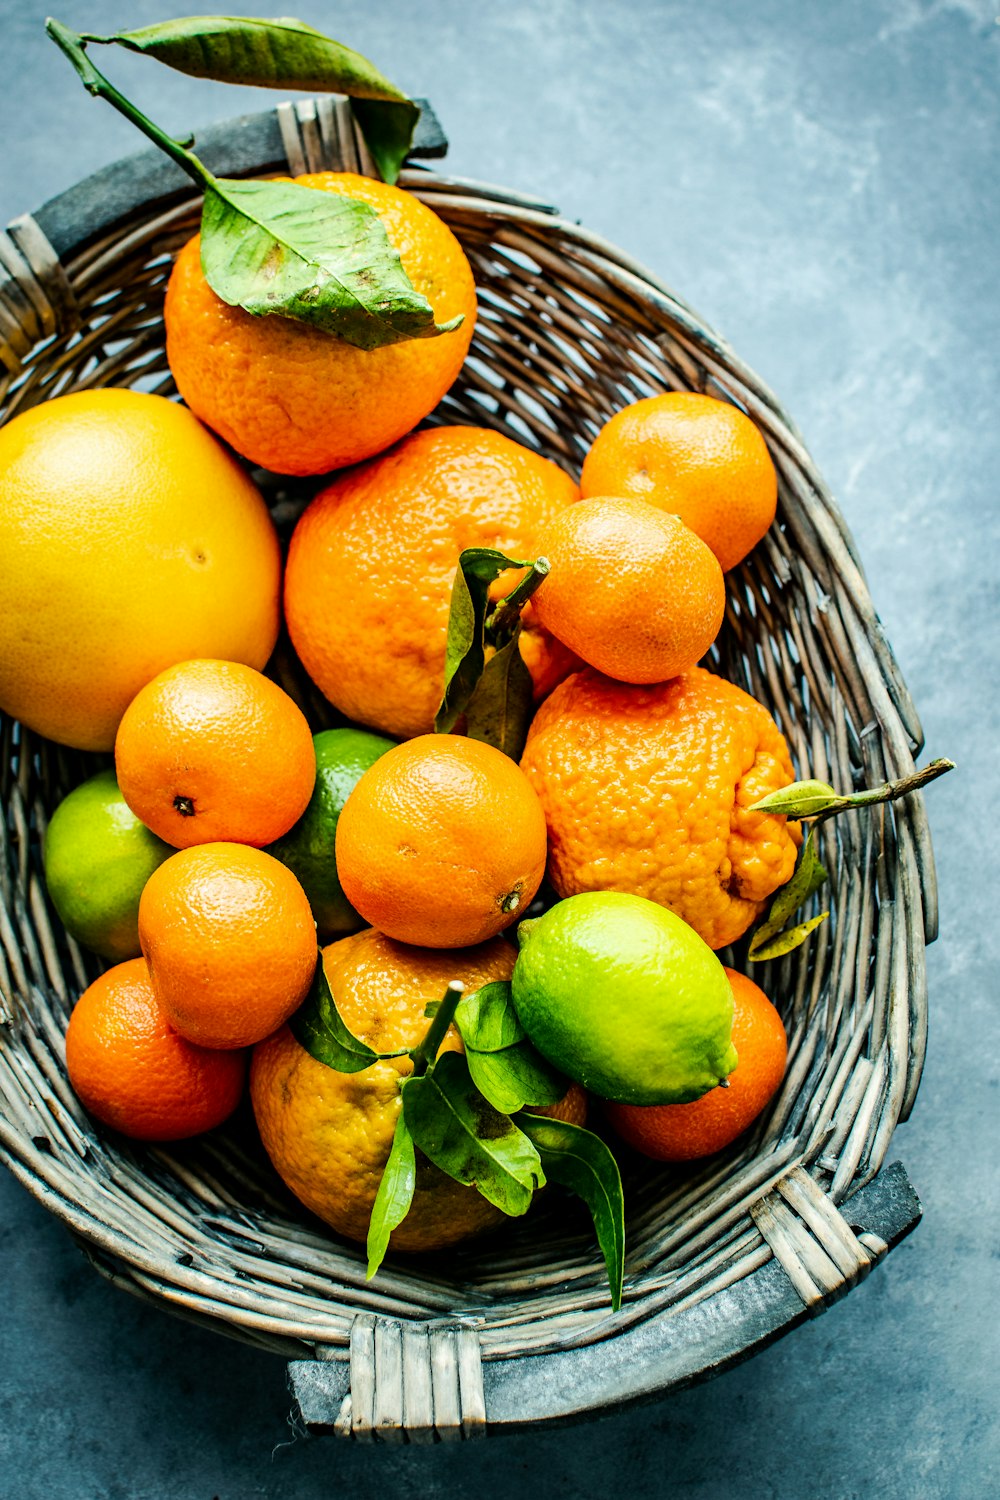 회색 고리 버들 세공 바구니에 오렌지와 레몬 과일